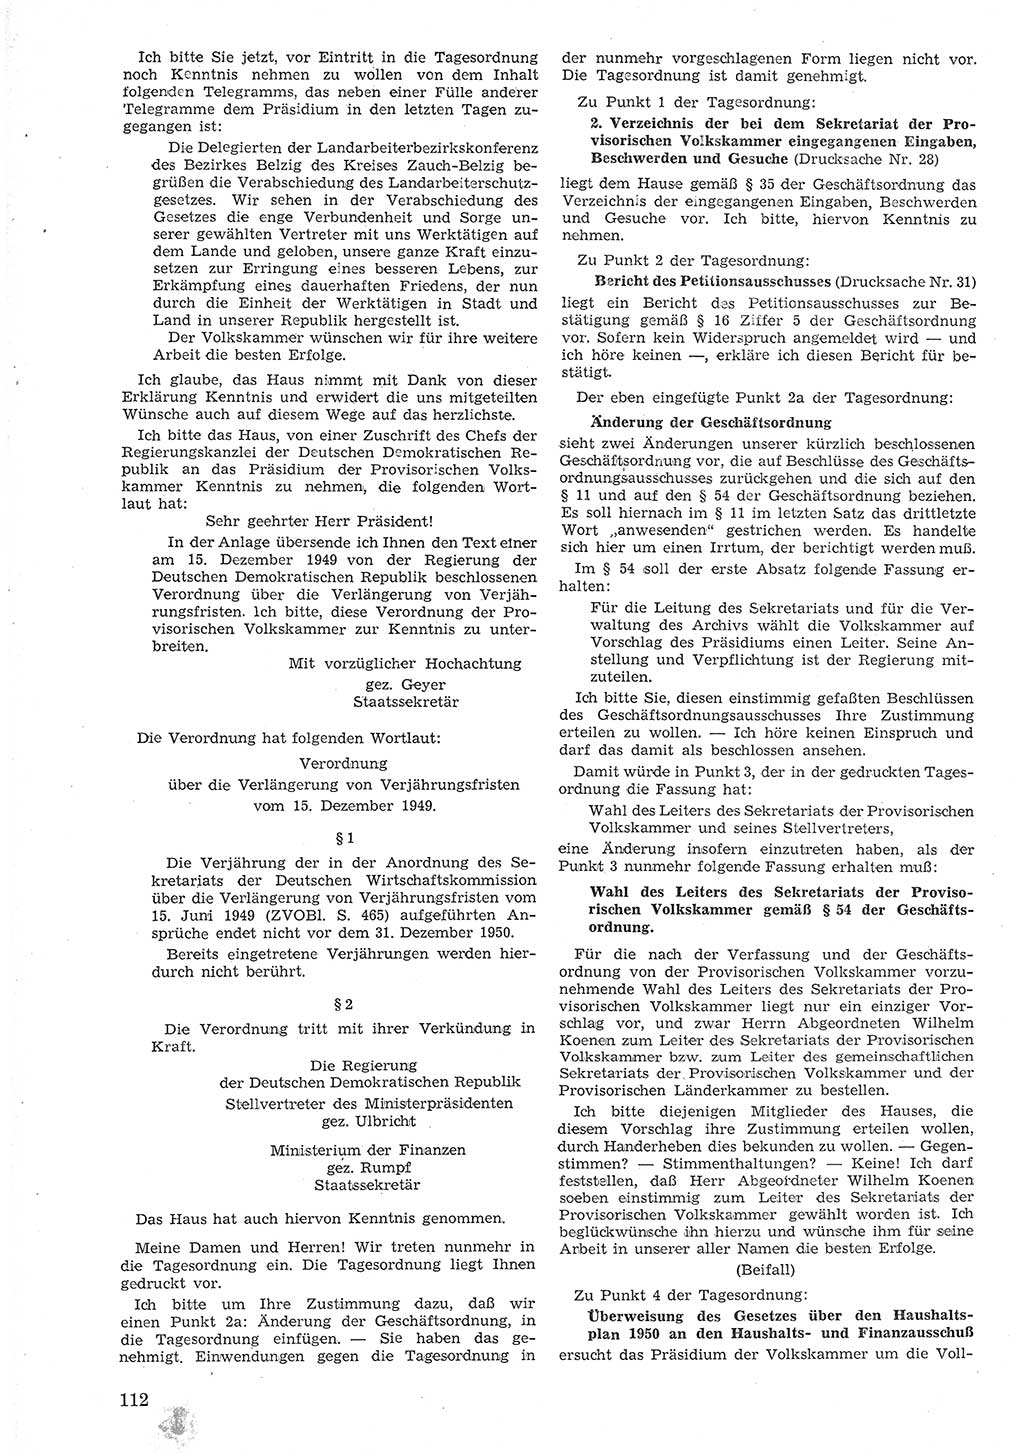 Provisorische Volkskammer (VK) der Deutschen Demokratischen Republik (DDR) 1949-1950, Dokument 124 (Prov. VK DDR 1949-1950, Dok. 124)